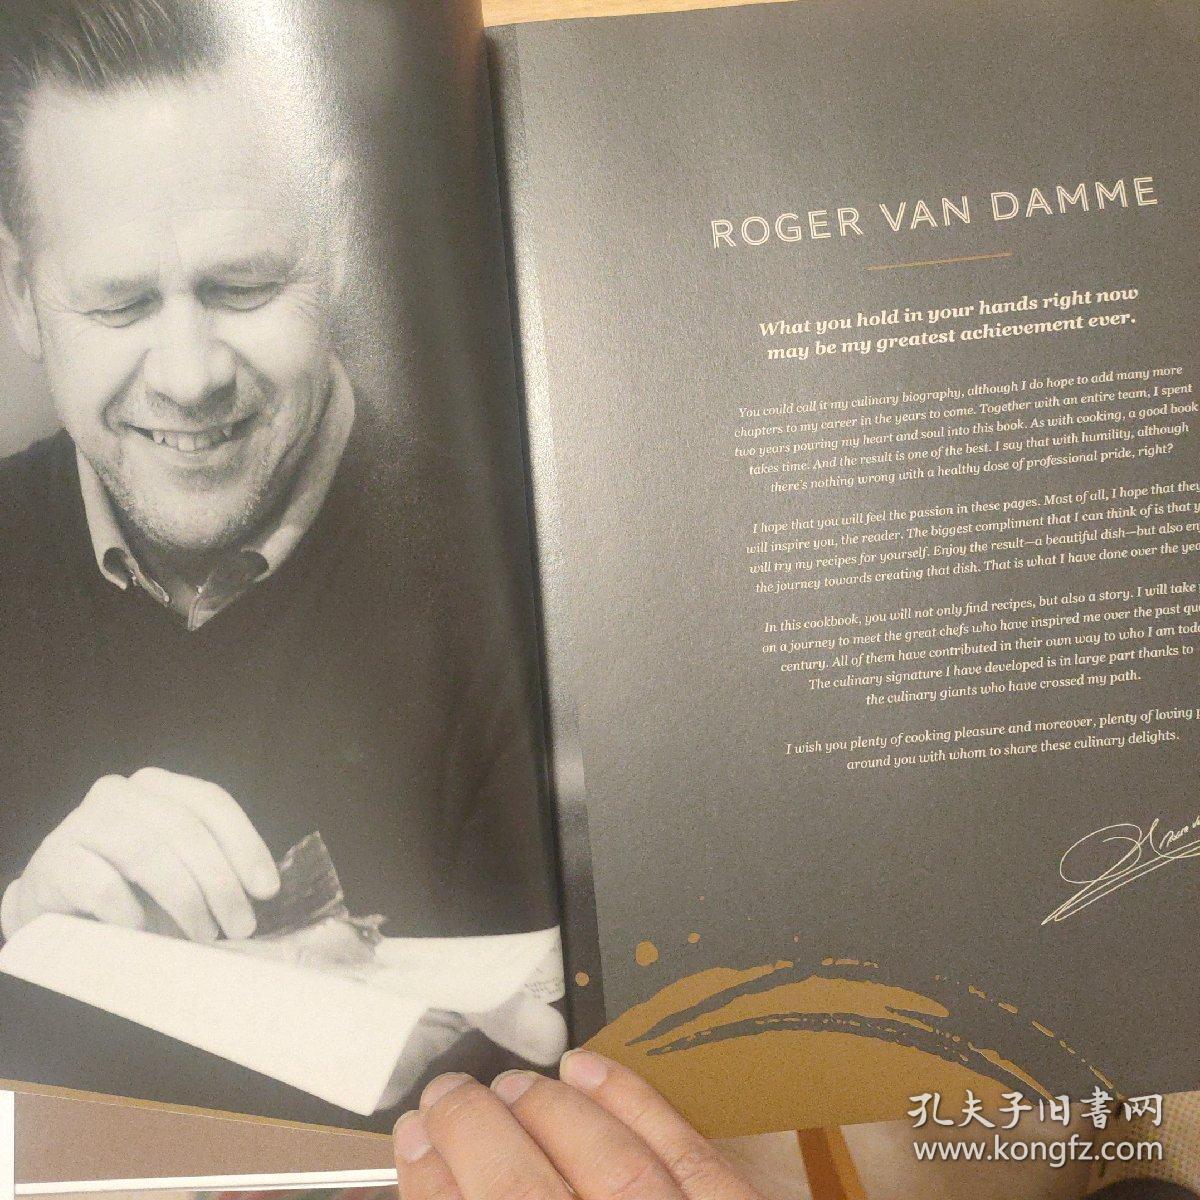 Roger van Damme Dessert